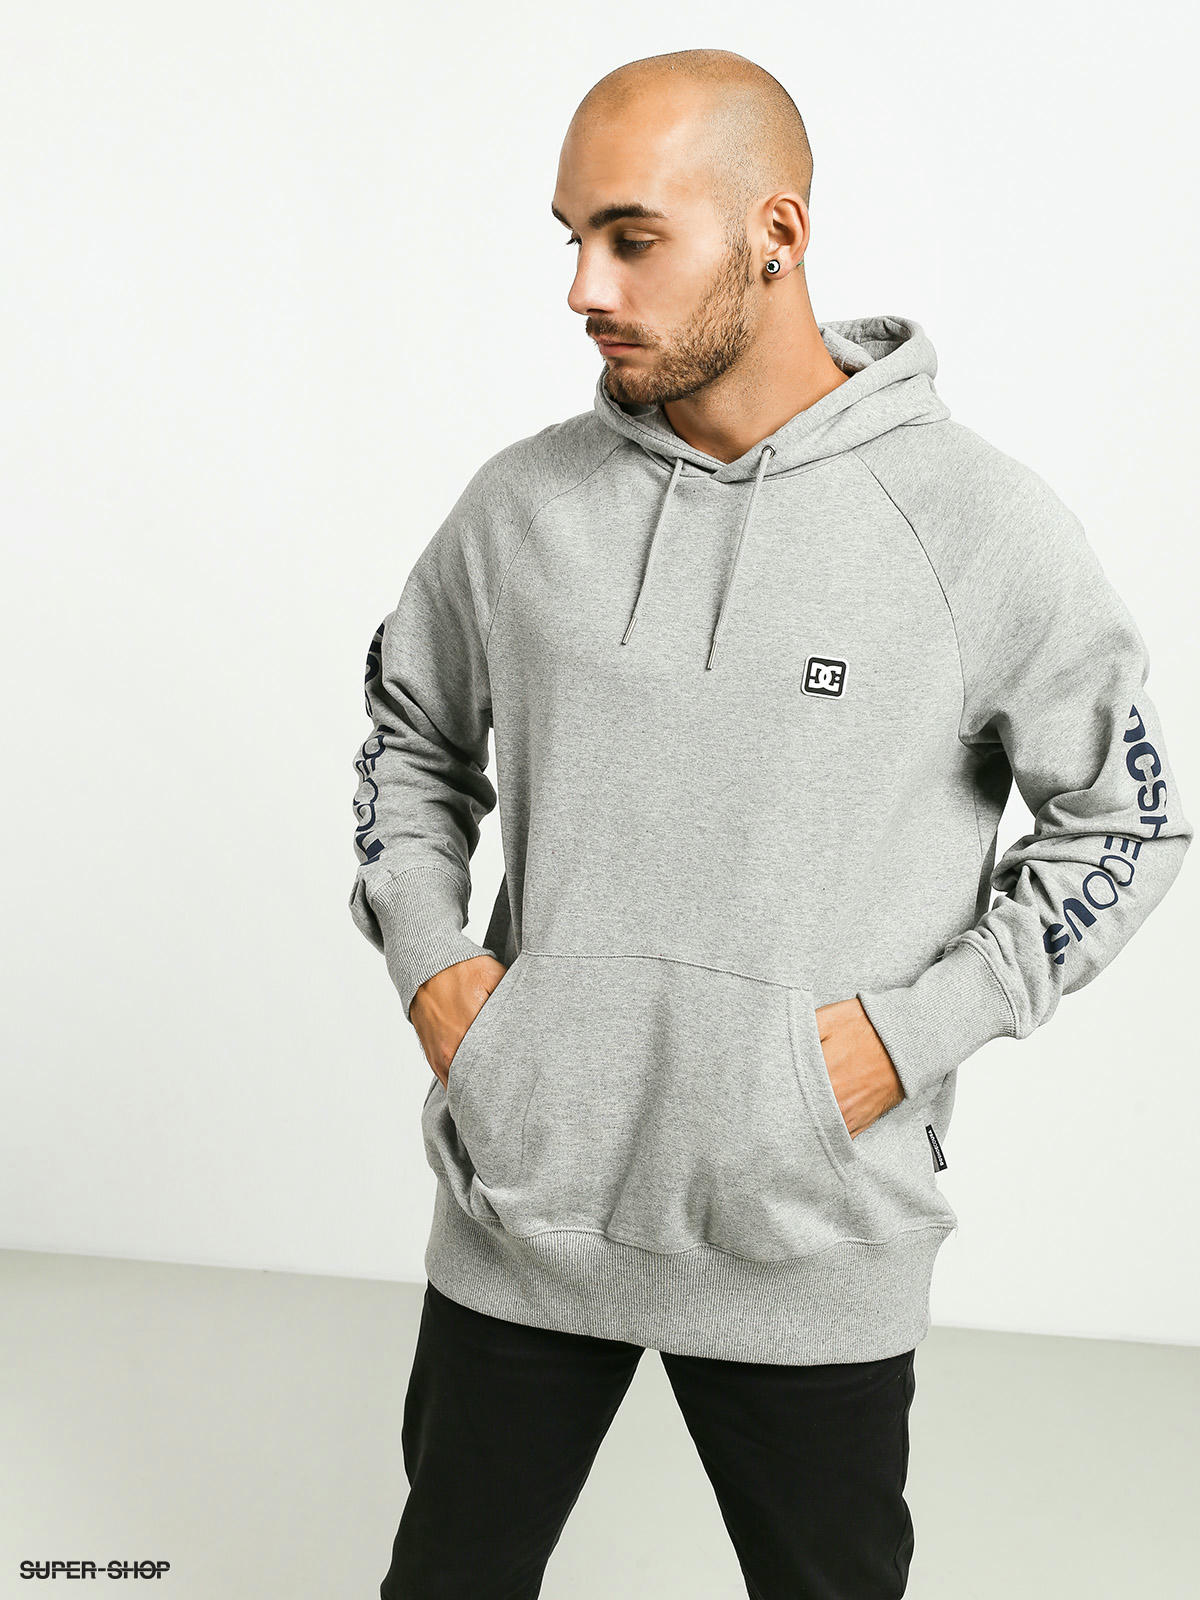 dc grey hoodie